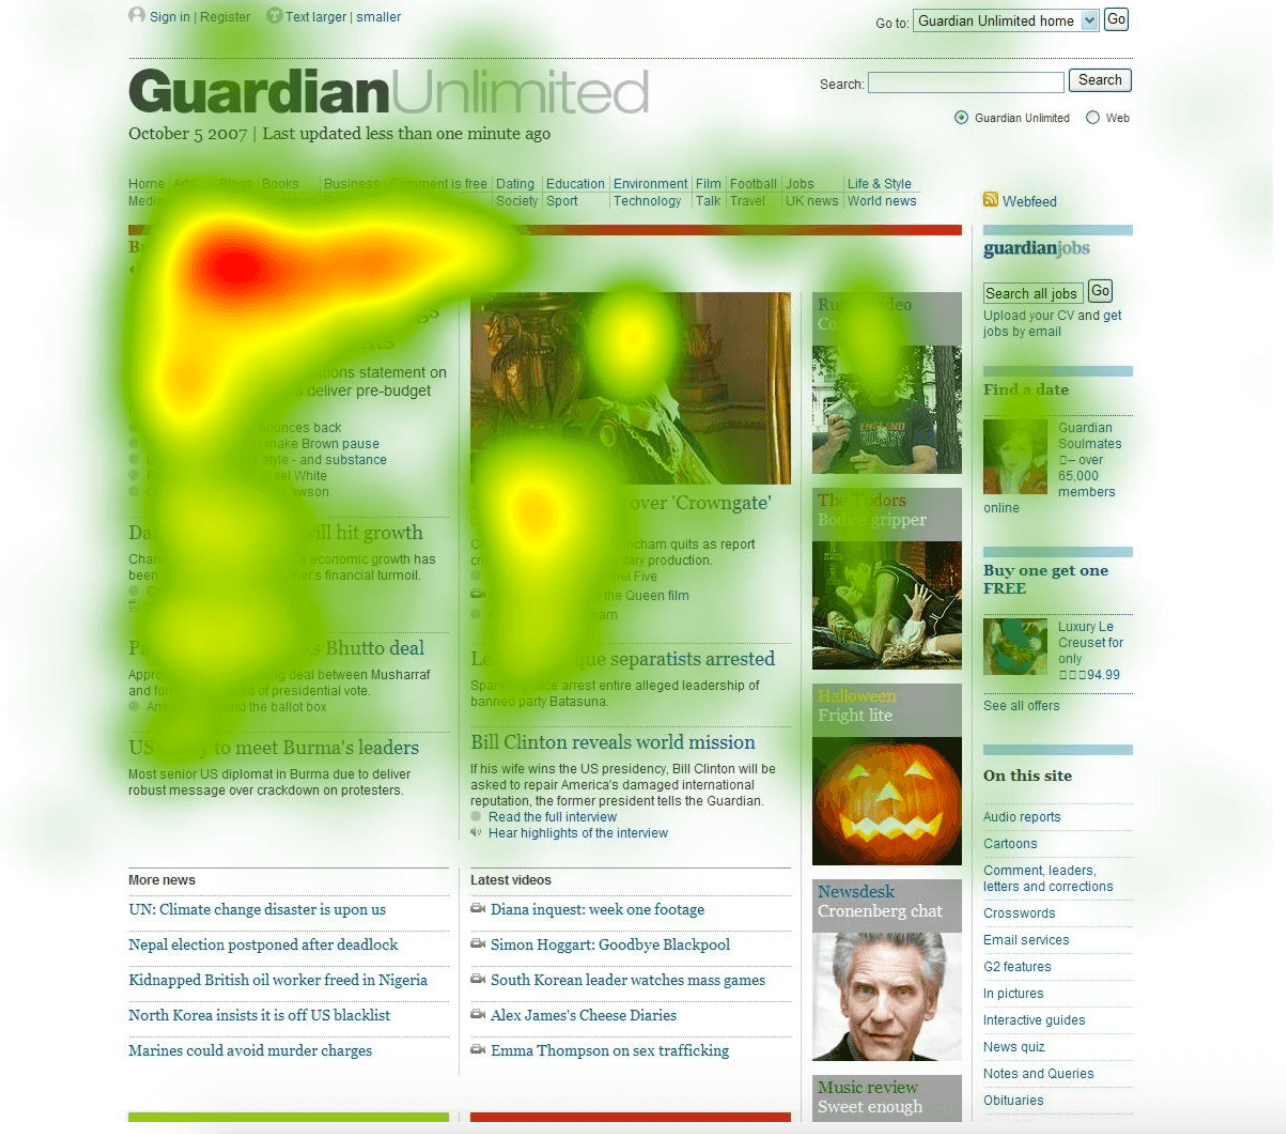 Zrzut ekranu mapy cieplnej z Guardiana pokazujący największą aktywność w pobliżu początku artykułu